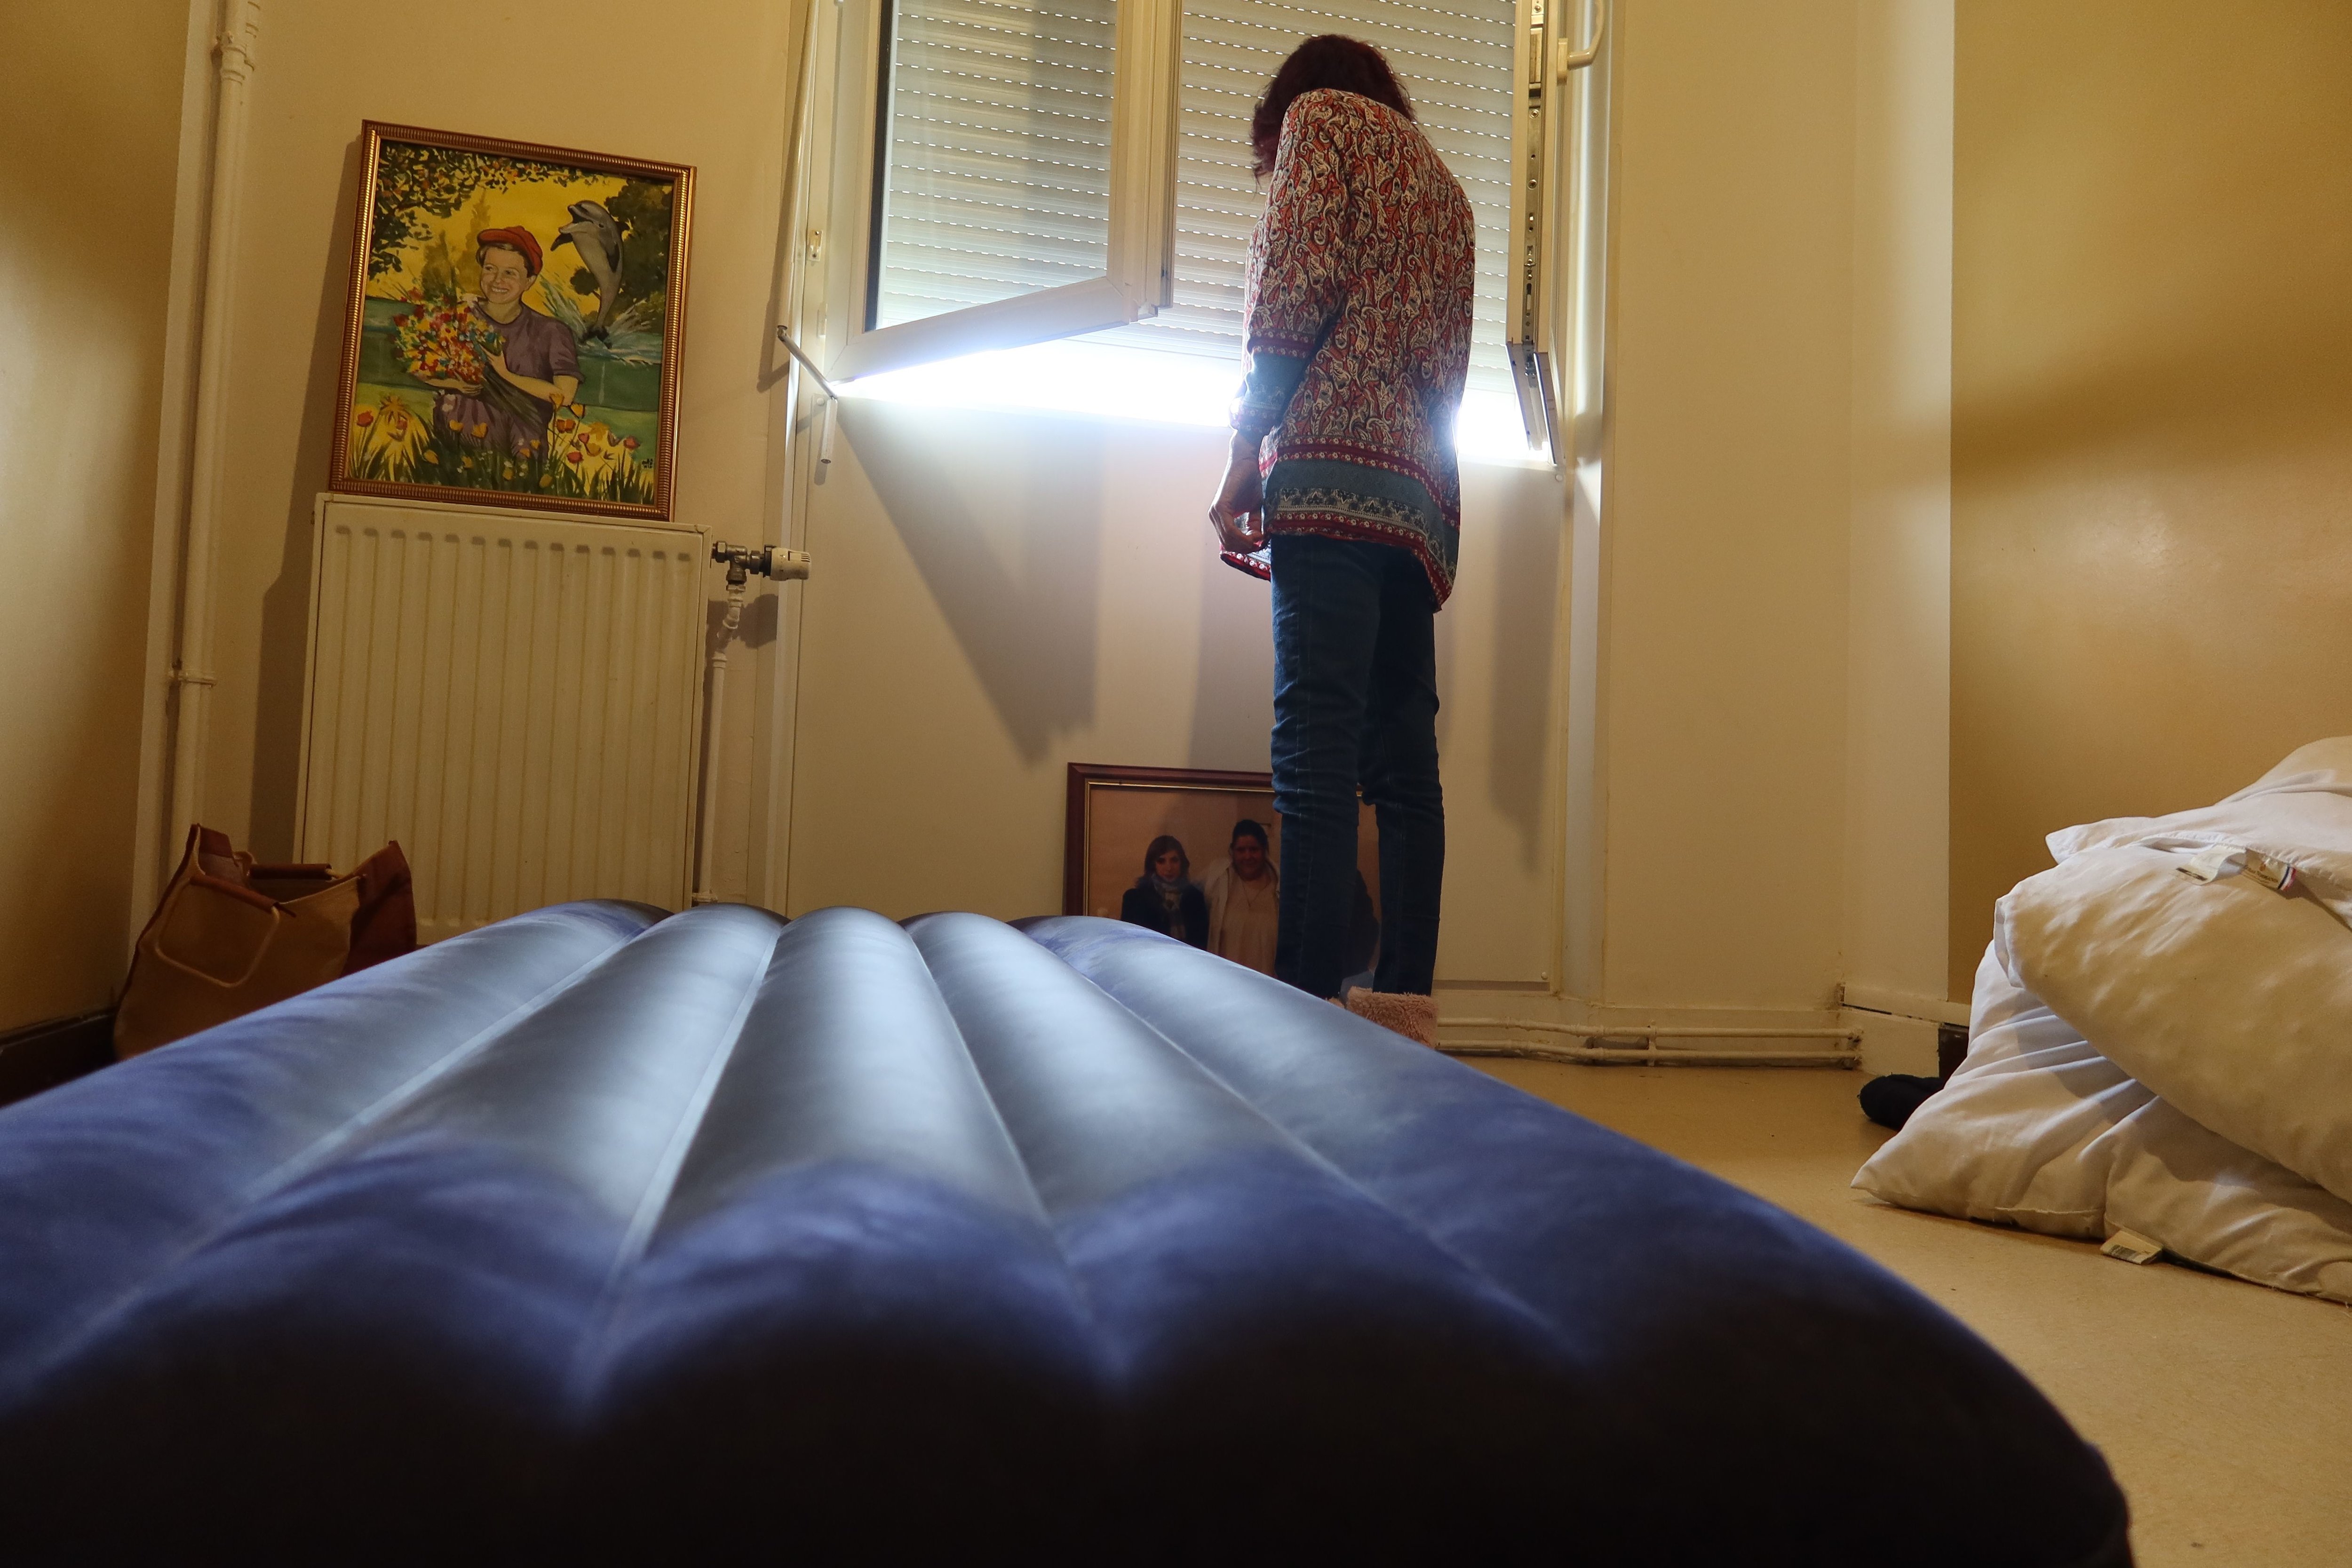 Invasion de punaises de lit dans le Marais : l'appartement non traité de la  Ville fait vivre un cauchemar aux habitants - Le Parisien